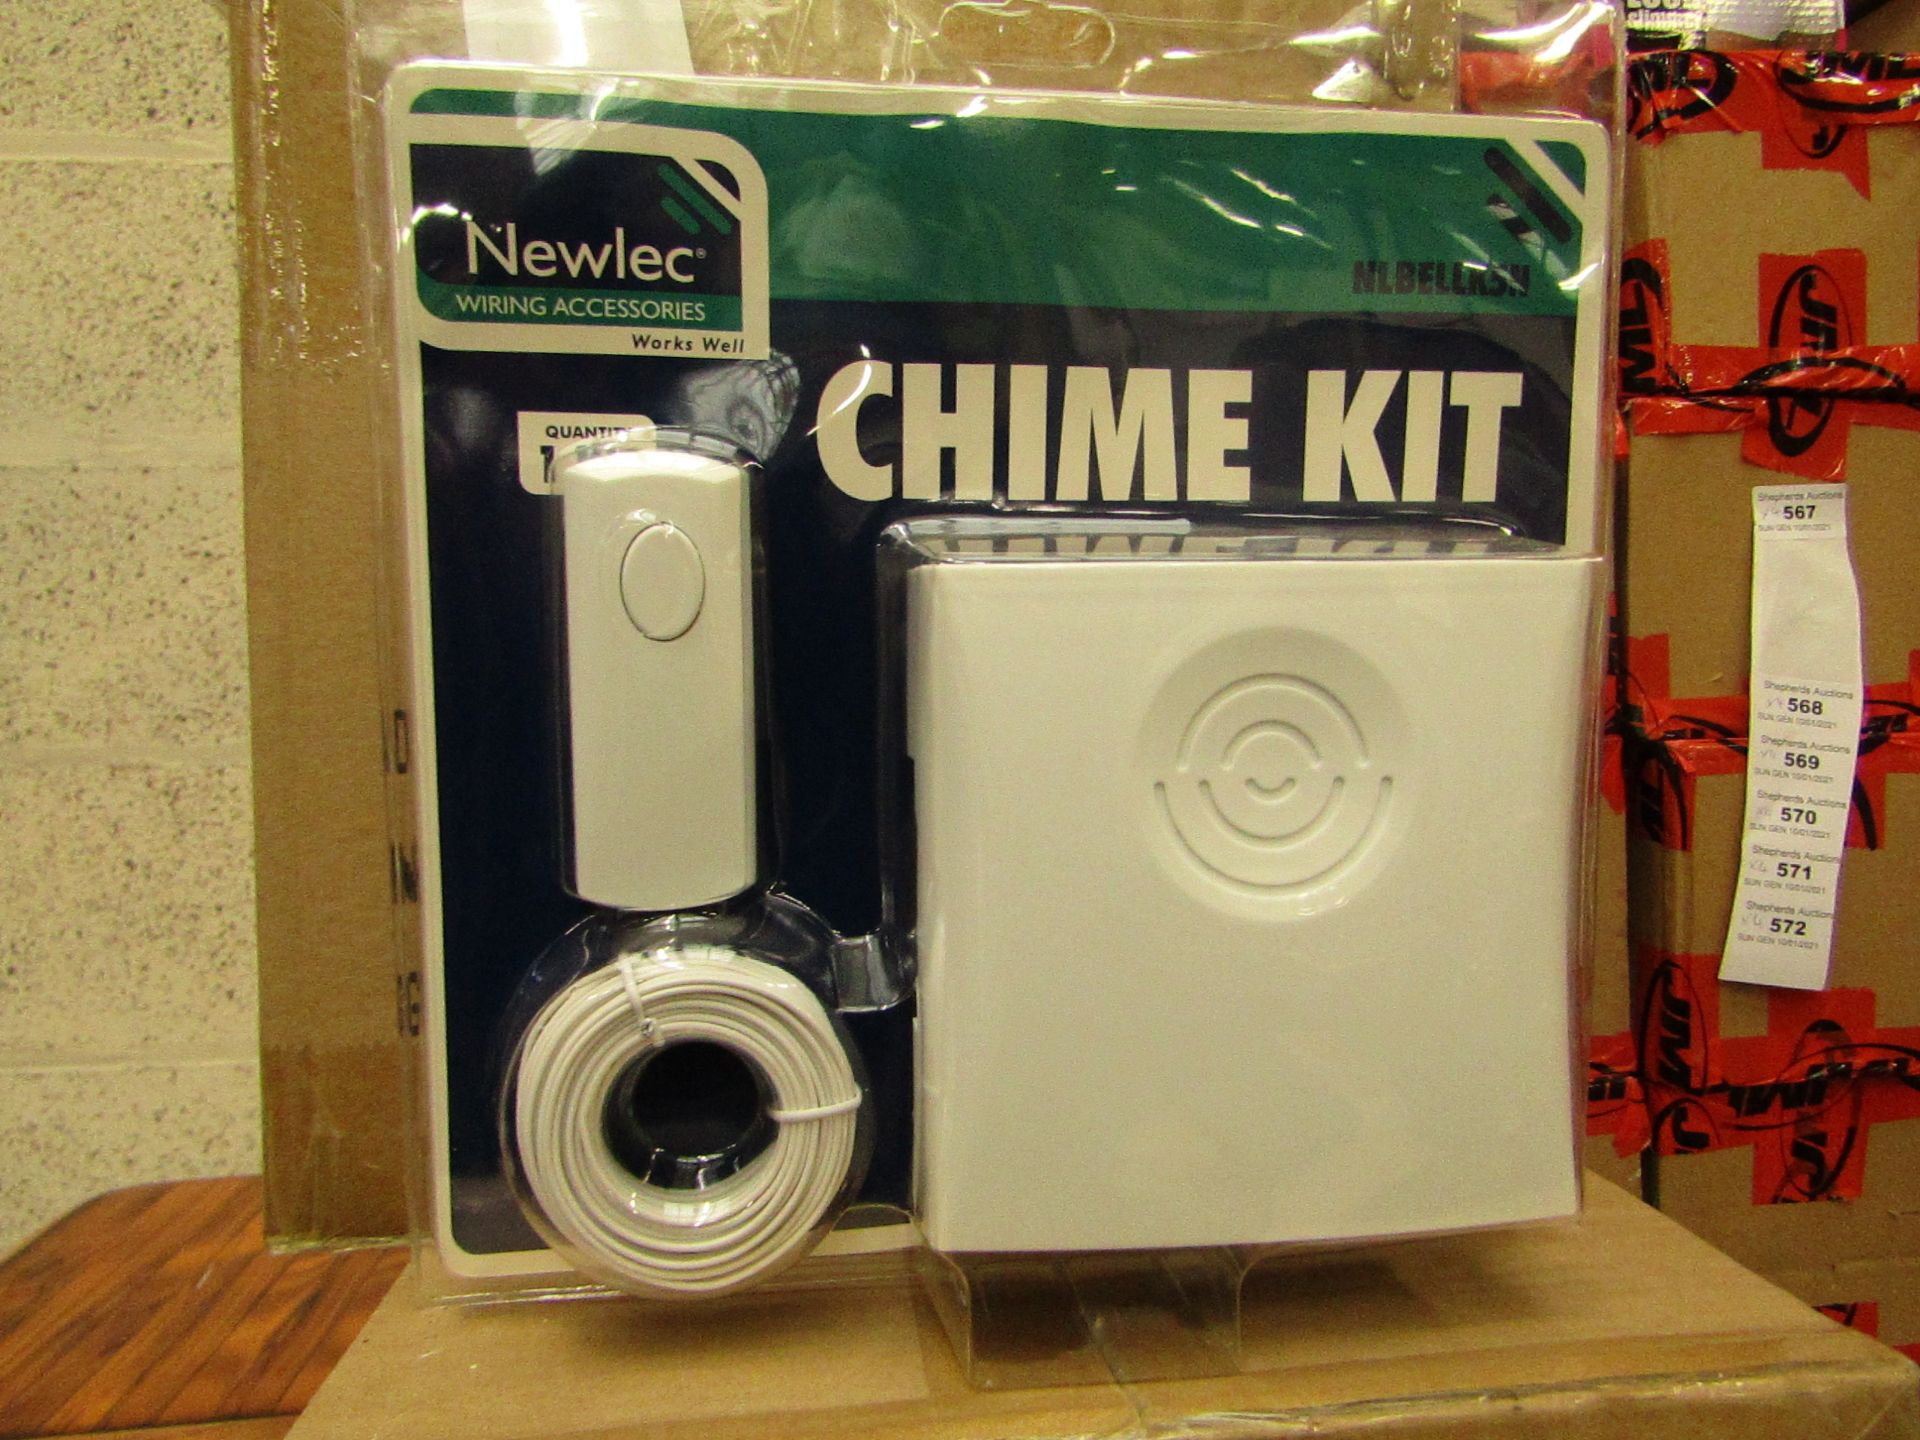 2x Newlec - Chime Kit - Unused & Packaged.